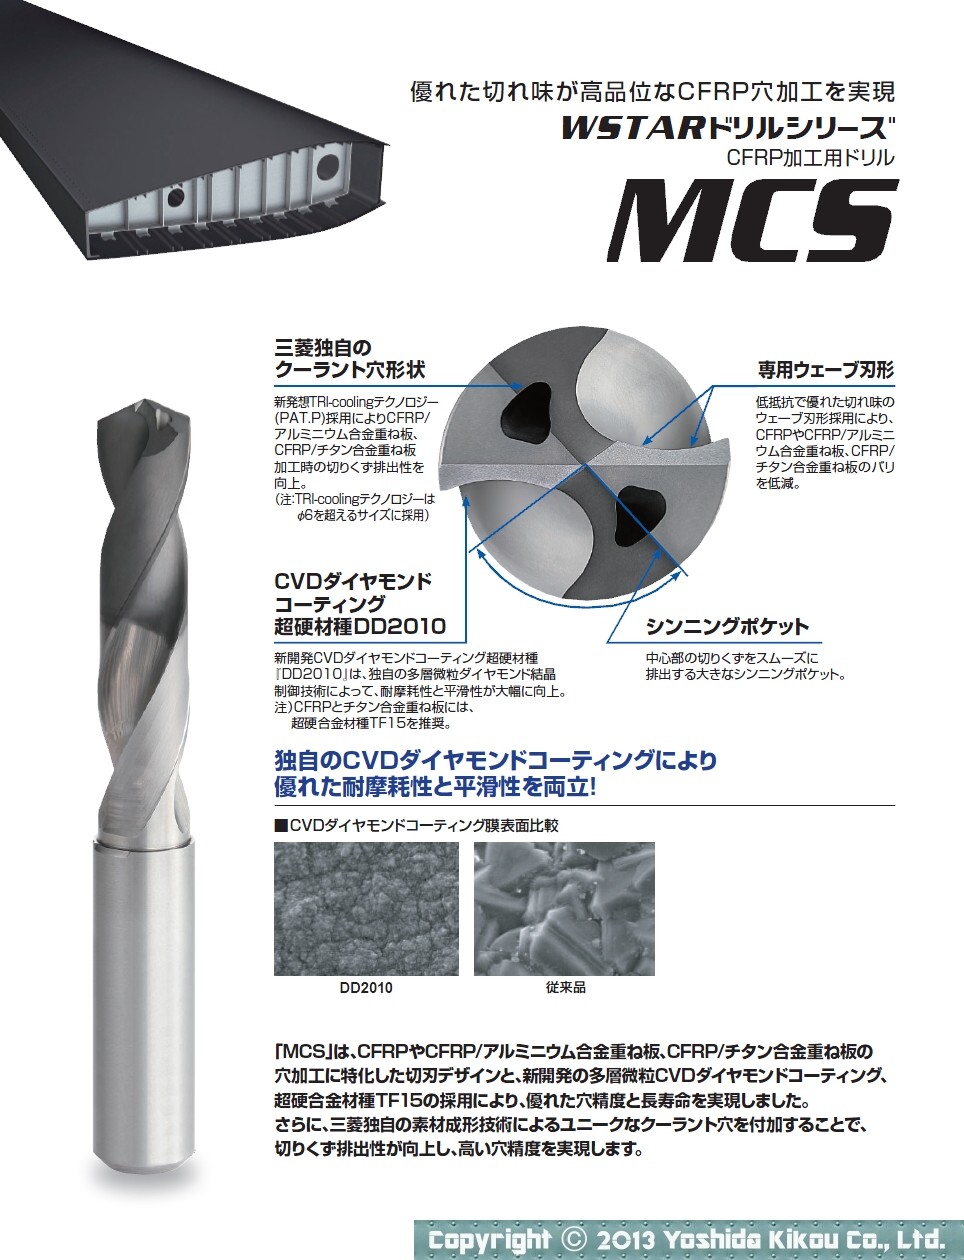 吉田機工株式会社 Yoshida Kikou Co.,Ltd. □ CFRP加工用ドリル「MCS